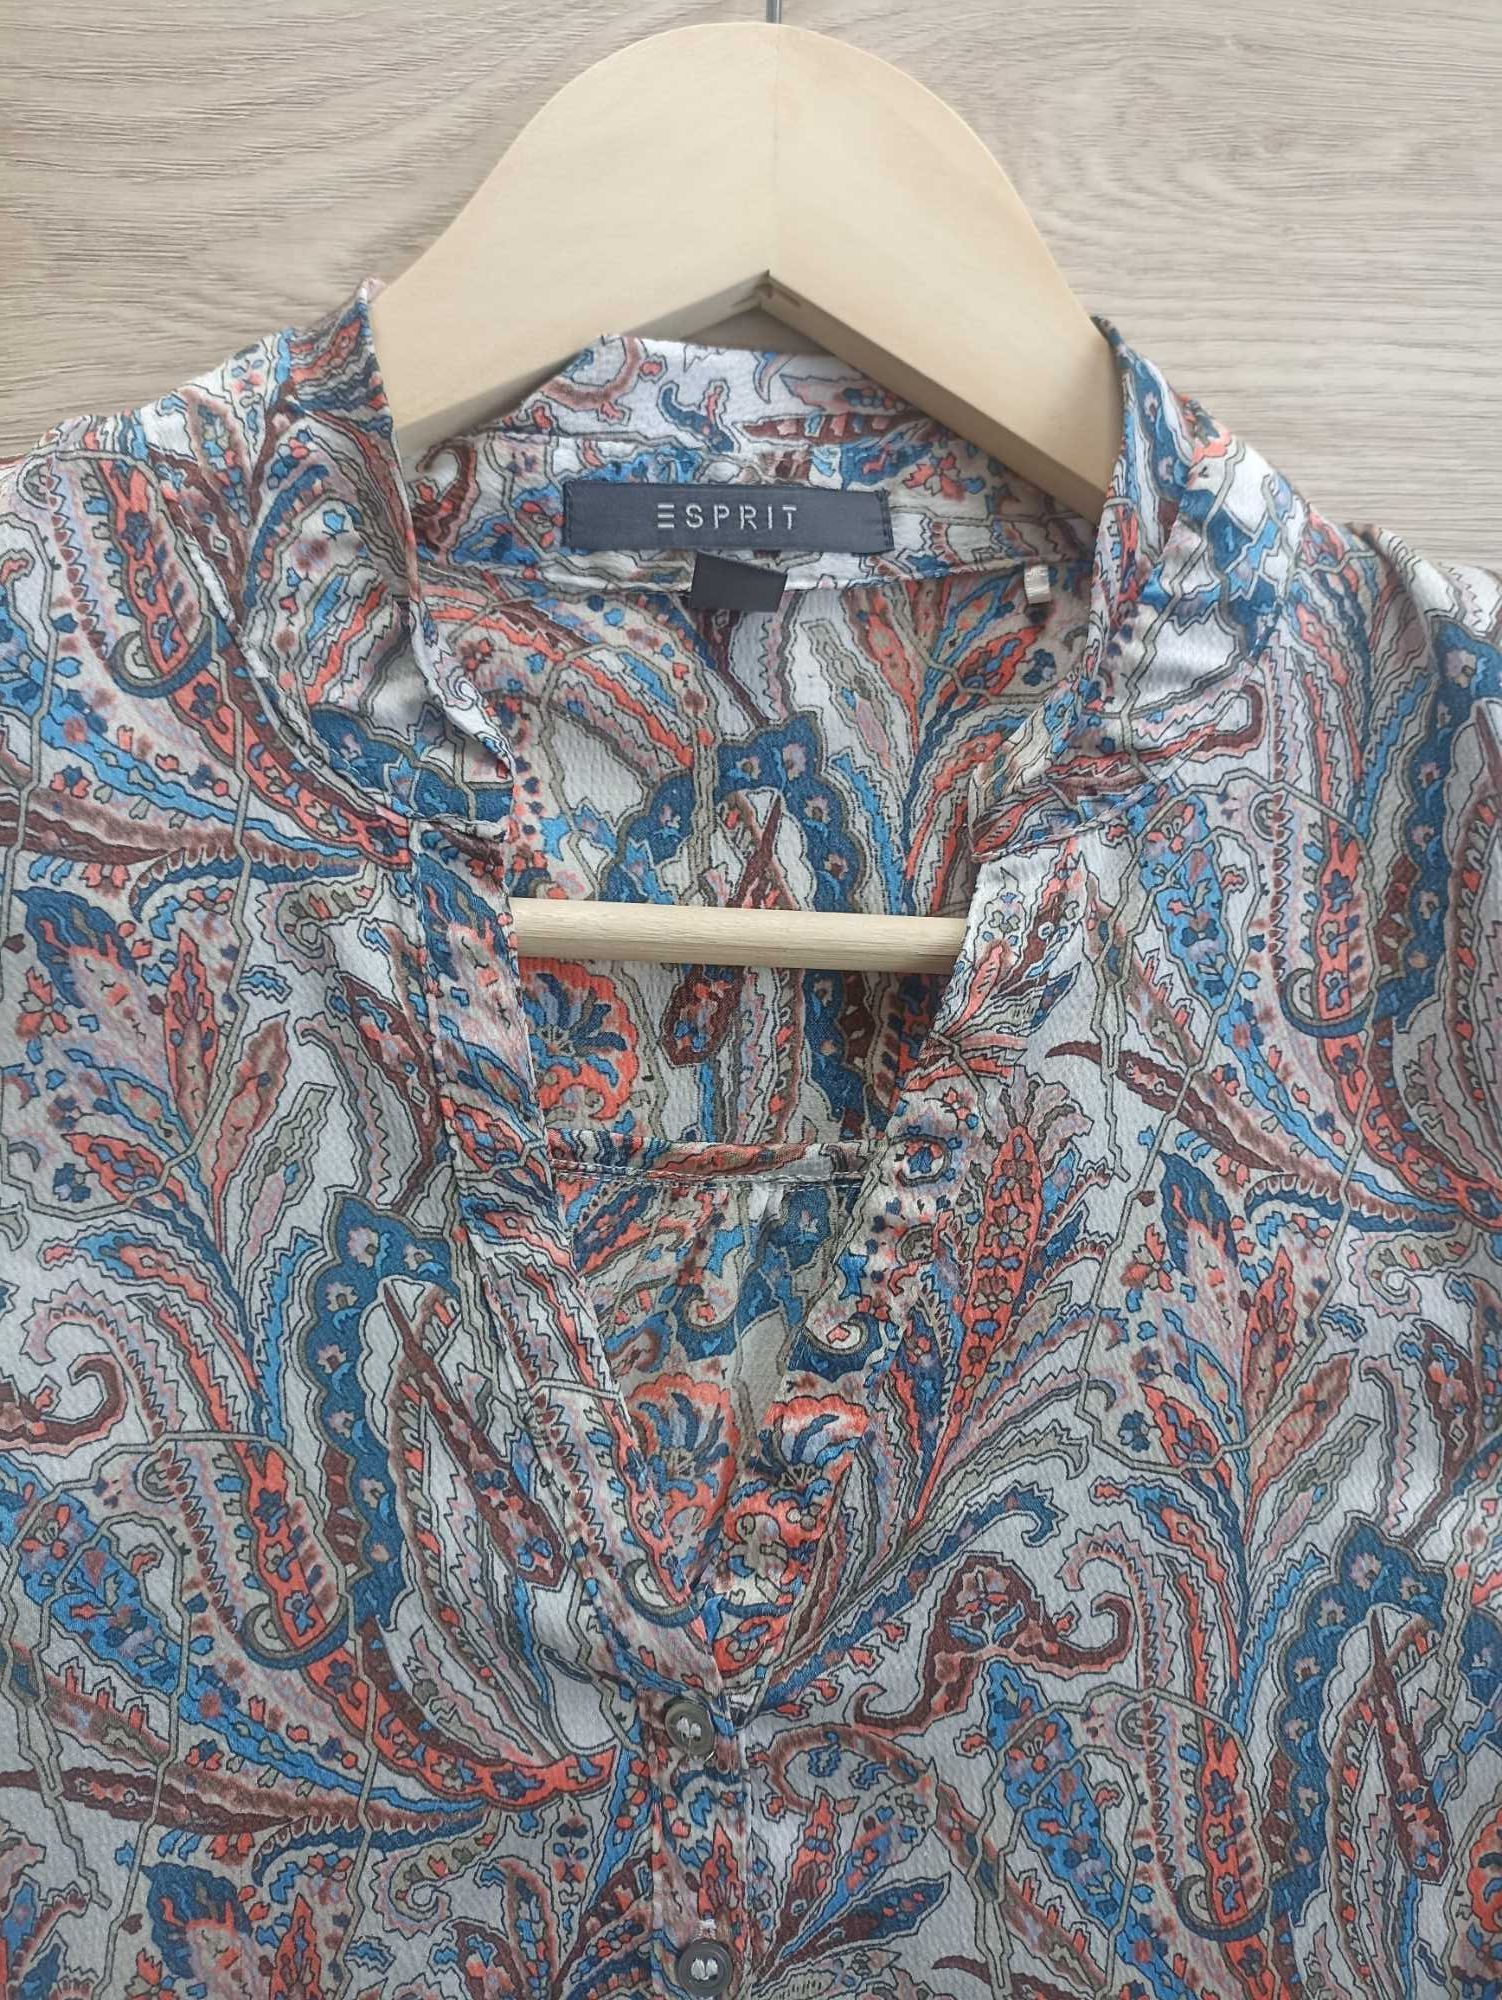 Damska bluzka, ESPRIT,  rozmiar EUR 36, UK 6, w stanie idealnym